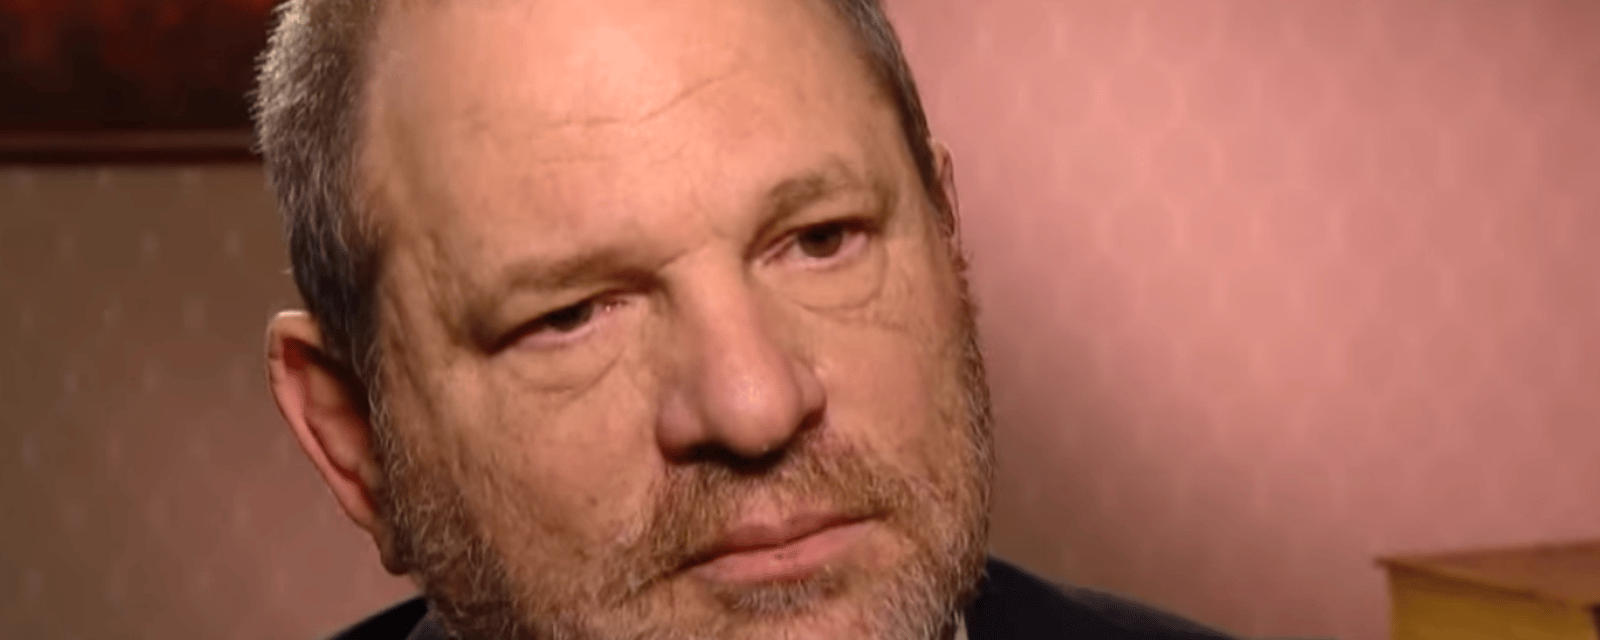 La cour d'appel annule la condamnation d'Harvey Weinstein